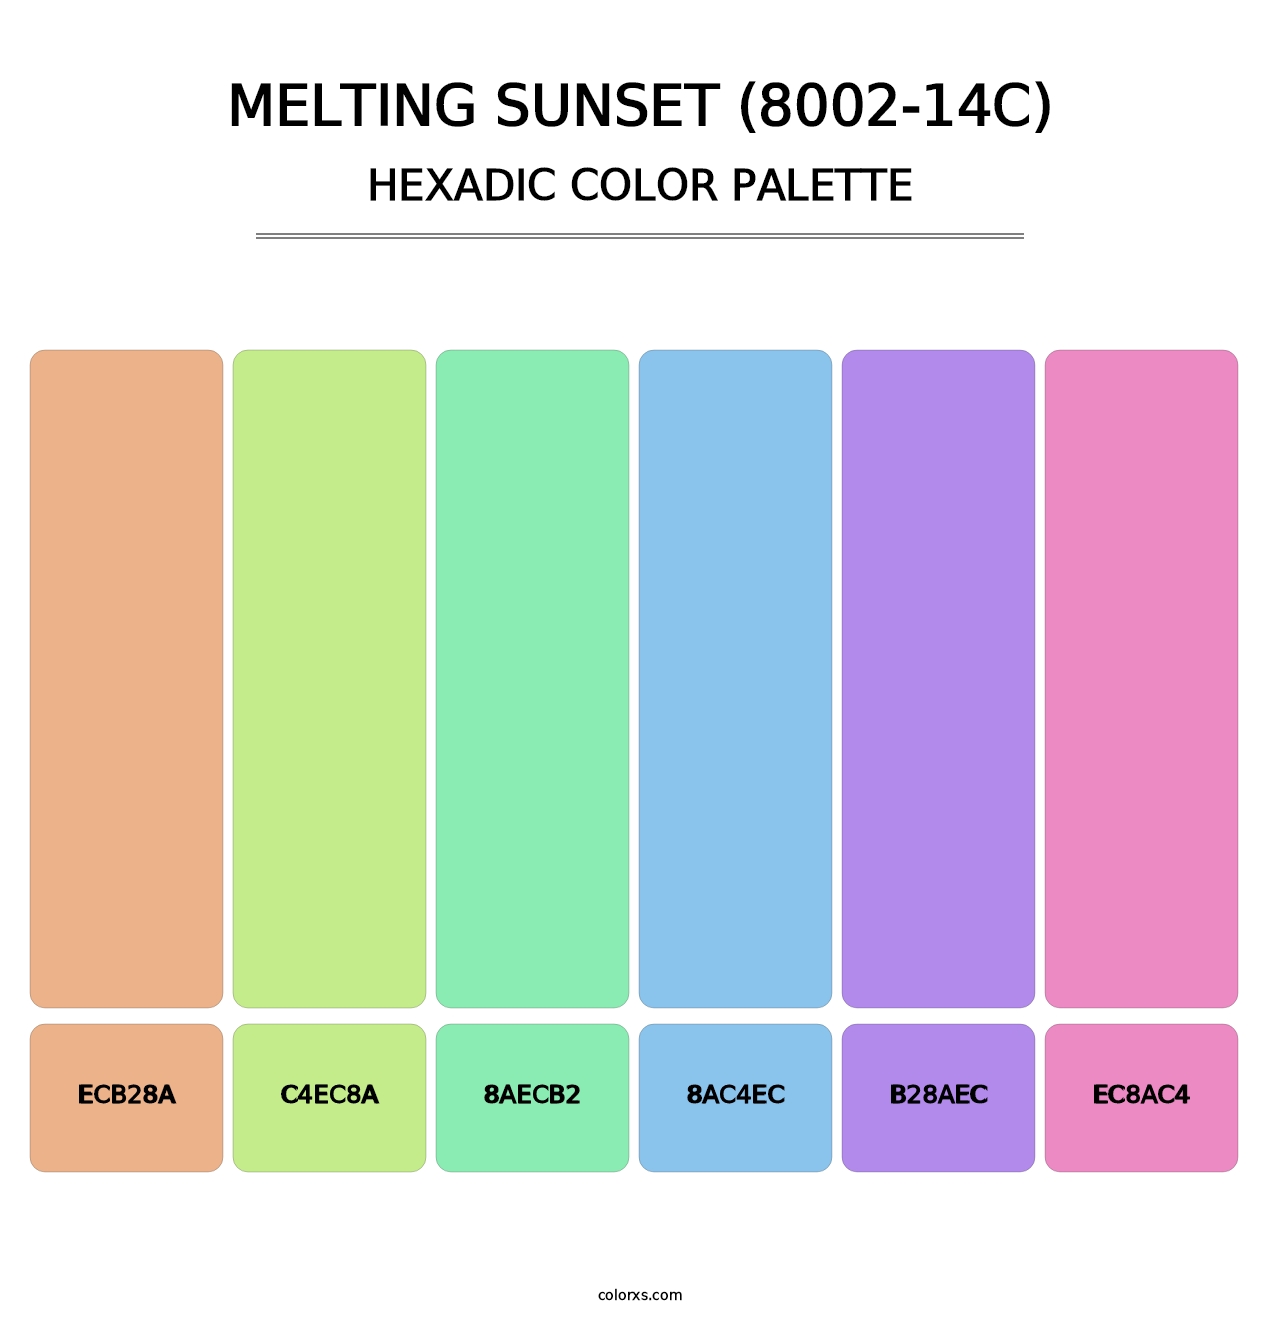 Melting Sunset (8002-14C) - Hexadic Color Palette